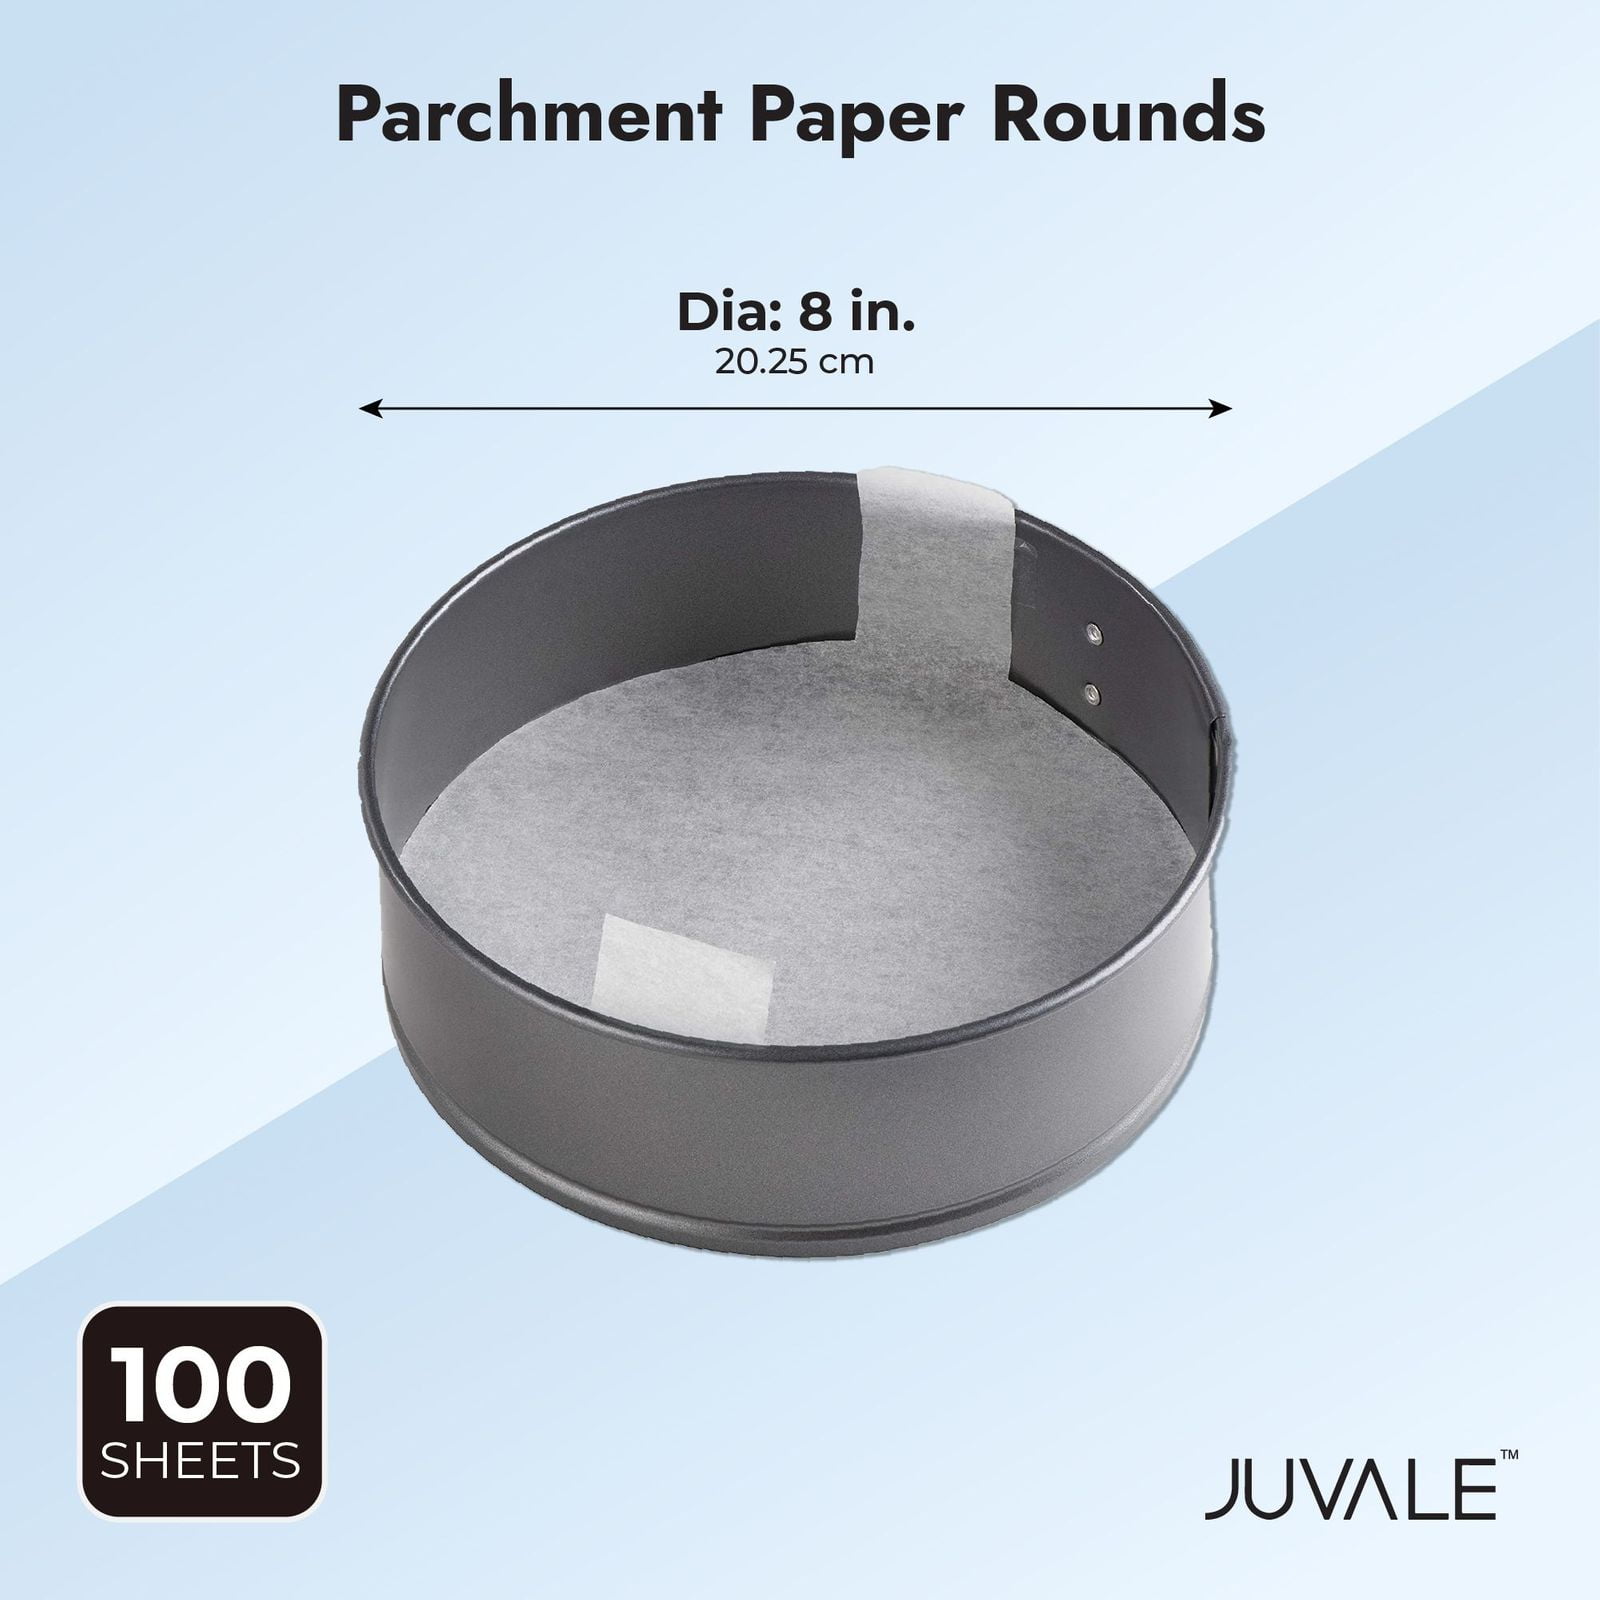 8 Inch Parchment Paper Rounds, 200PCS Unbleached and Non Stick Baking  Parchment Rounds, Precut Round Parchment Paper for Baking Sheets Round,  Cake